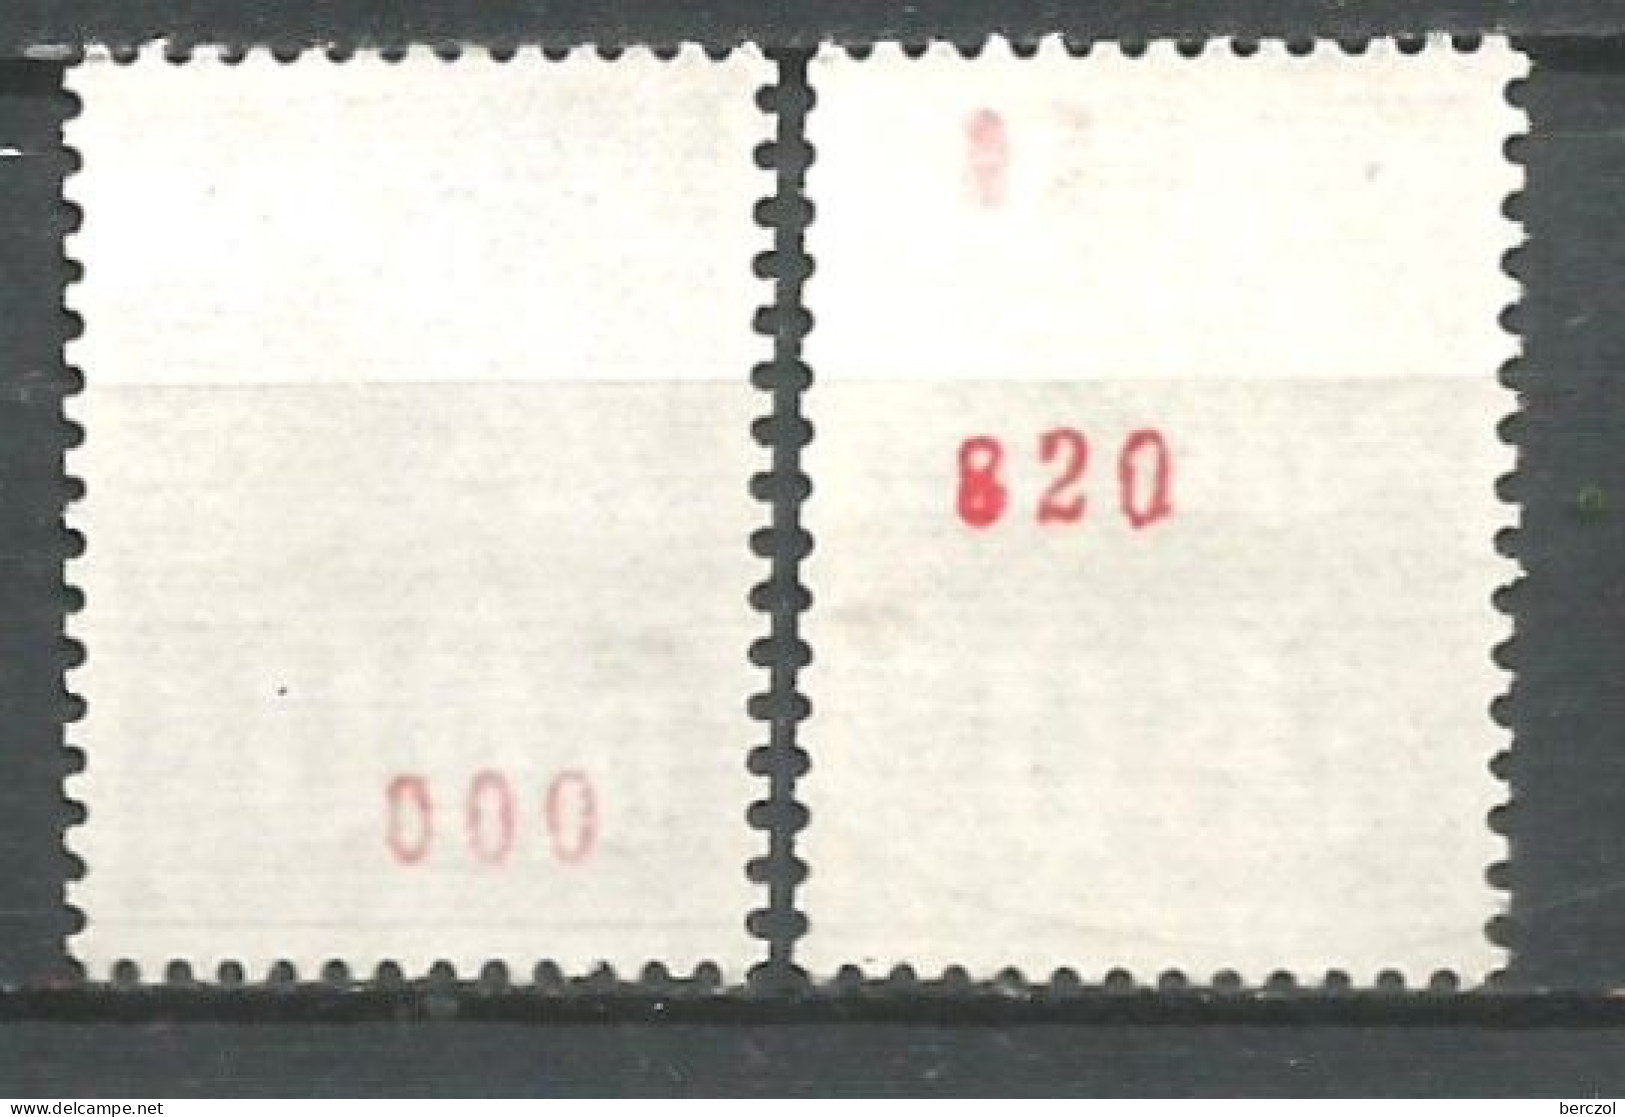 FRANCE ANNEE 1974  N° 1815bx2 NEUFS** MNH TB COTE 50,00 €  - Neufs